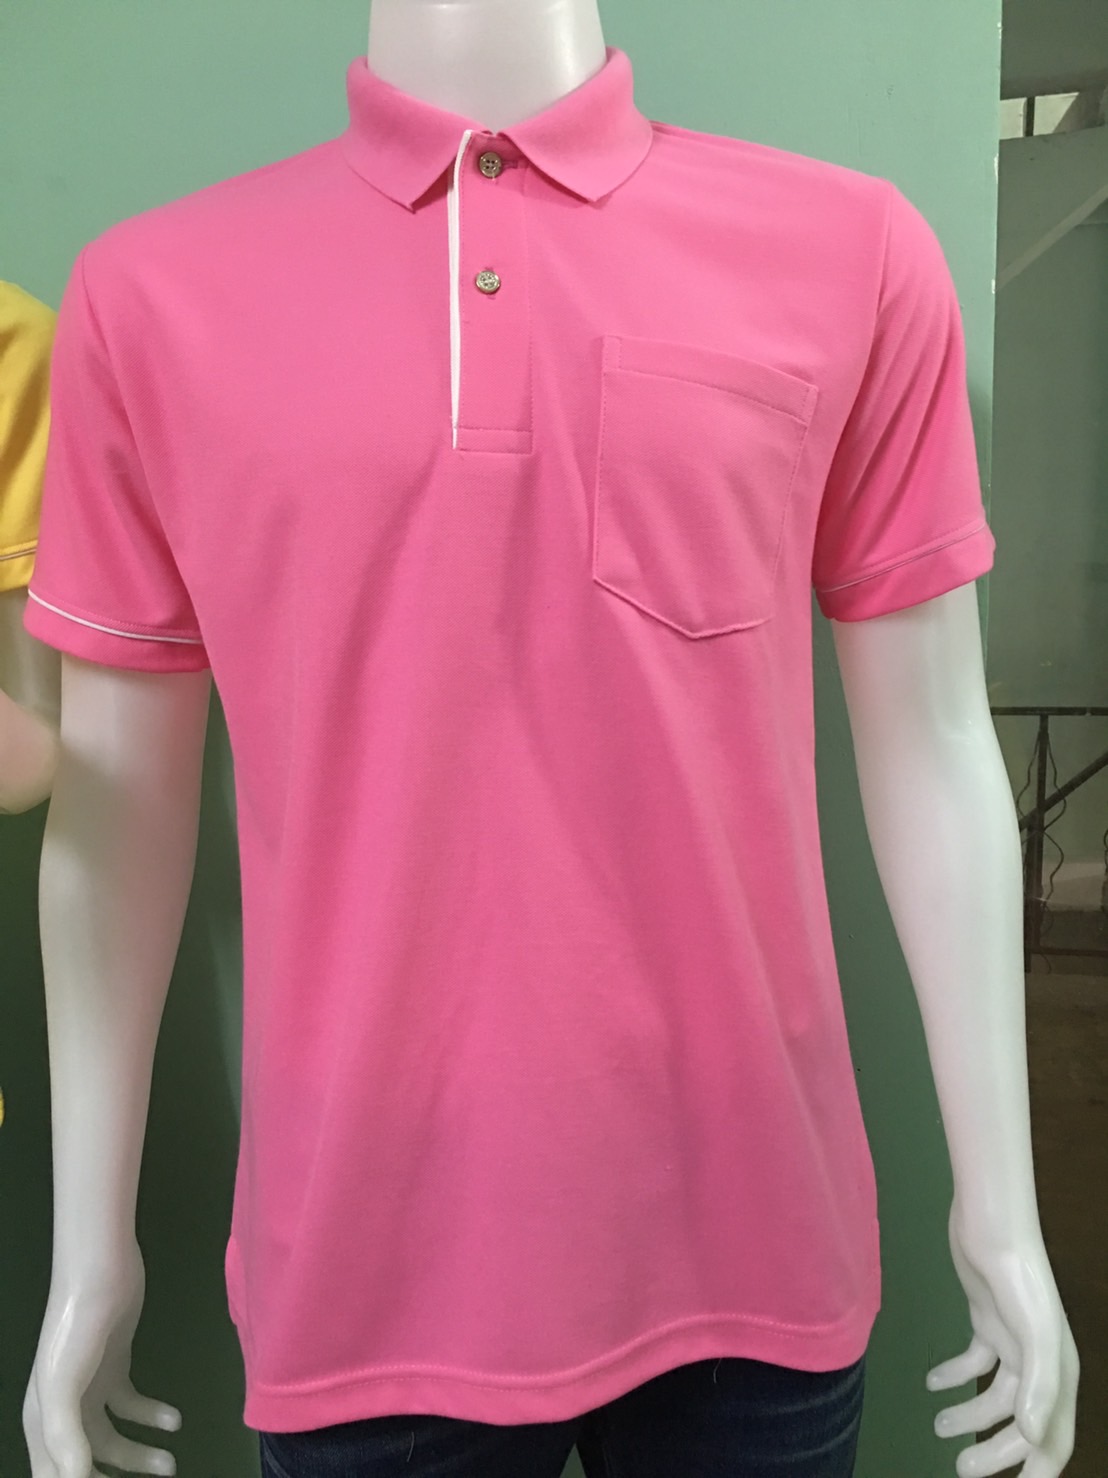 C H shop เสื้อโปโลสีชมพู ทรงผู้ชายทรงผู้หญิง ชุดทำงาน สีชมพูกลาง